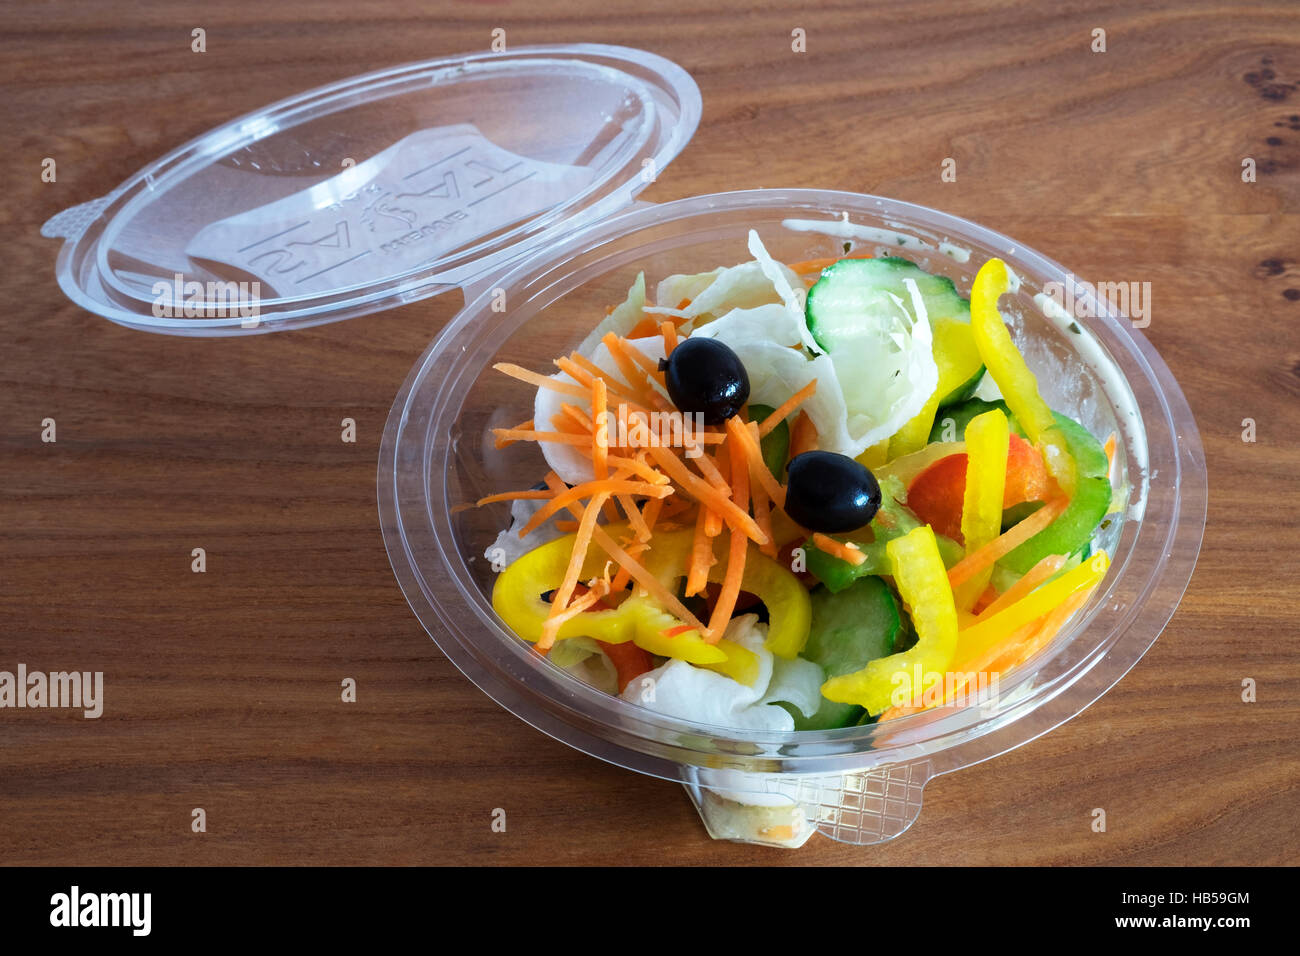 take away salad bowl Stock Photo